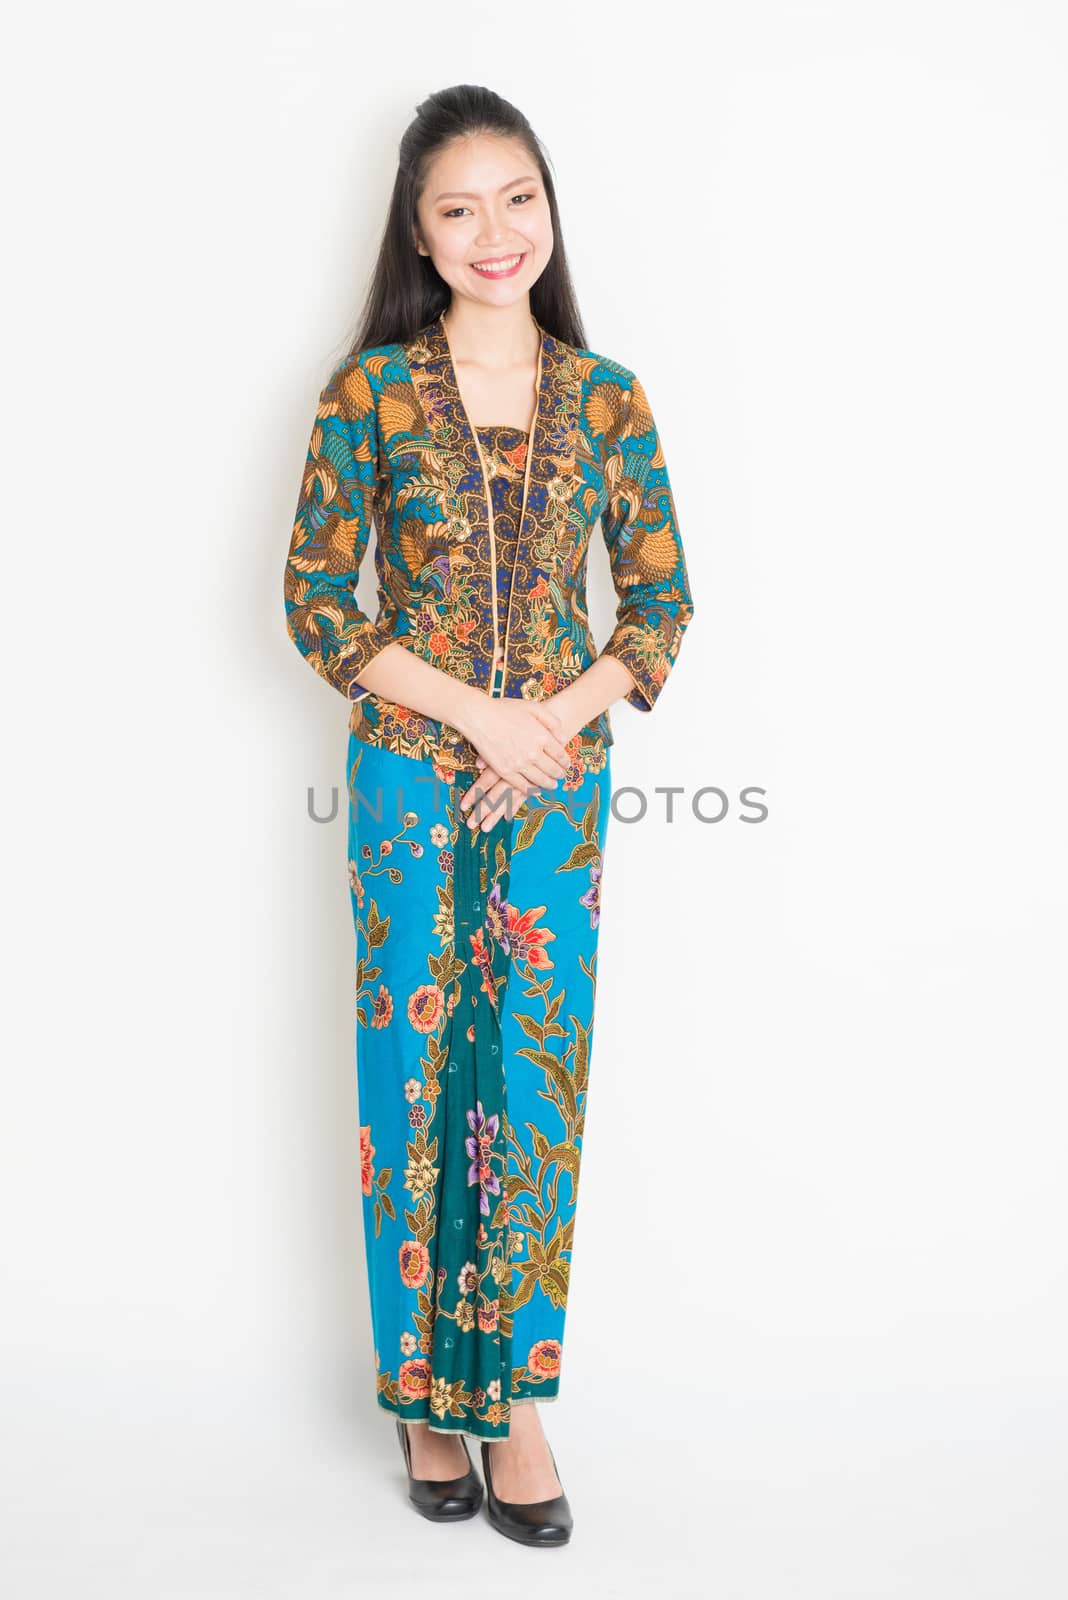 Southeast Asian female in batik dress  by szefei